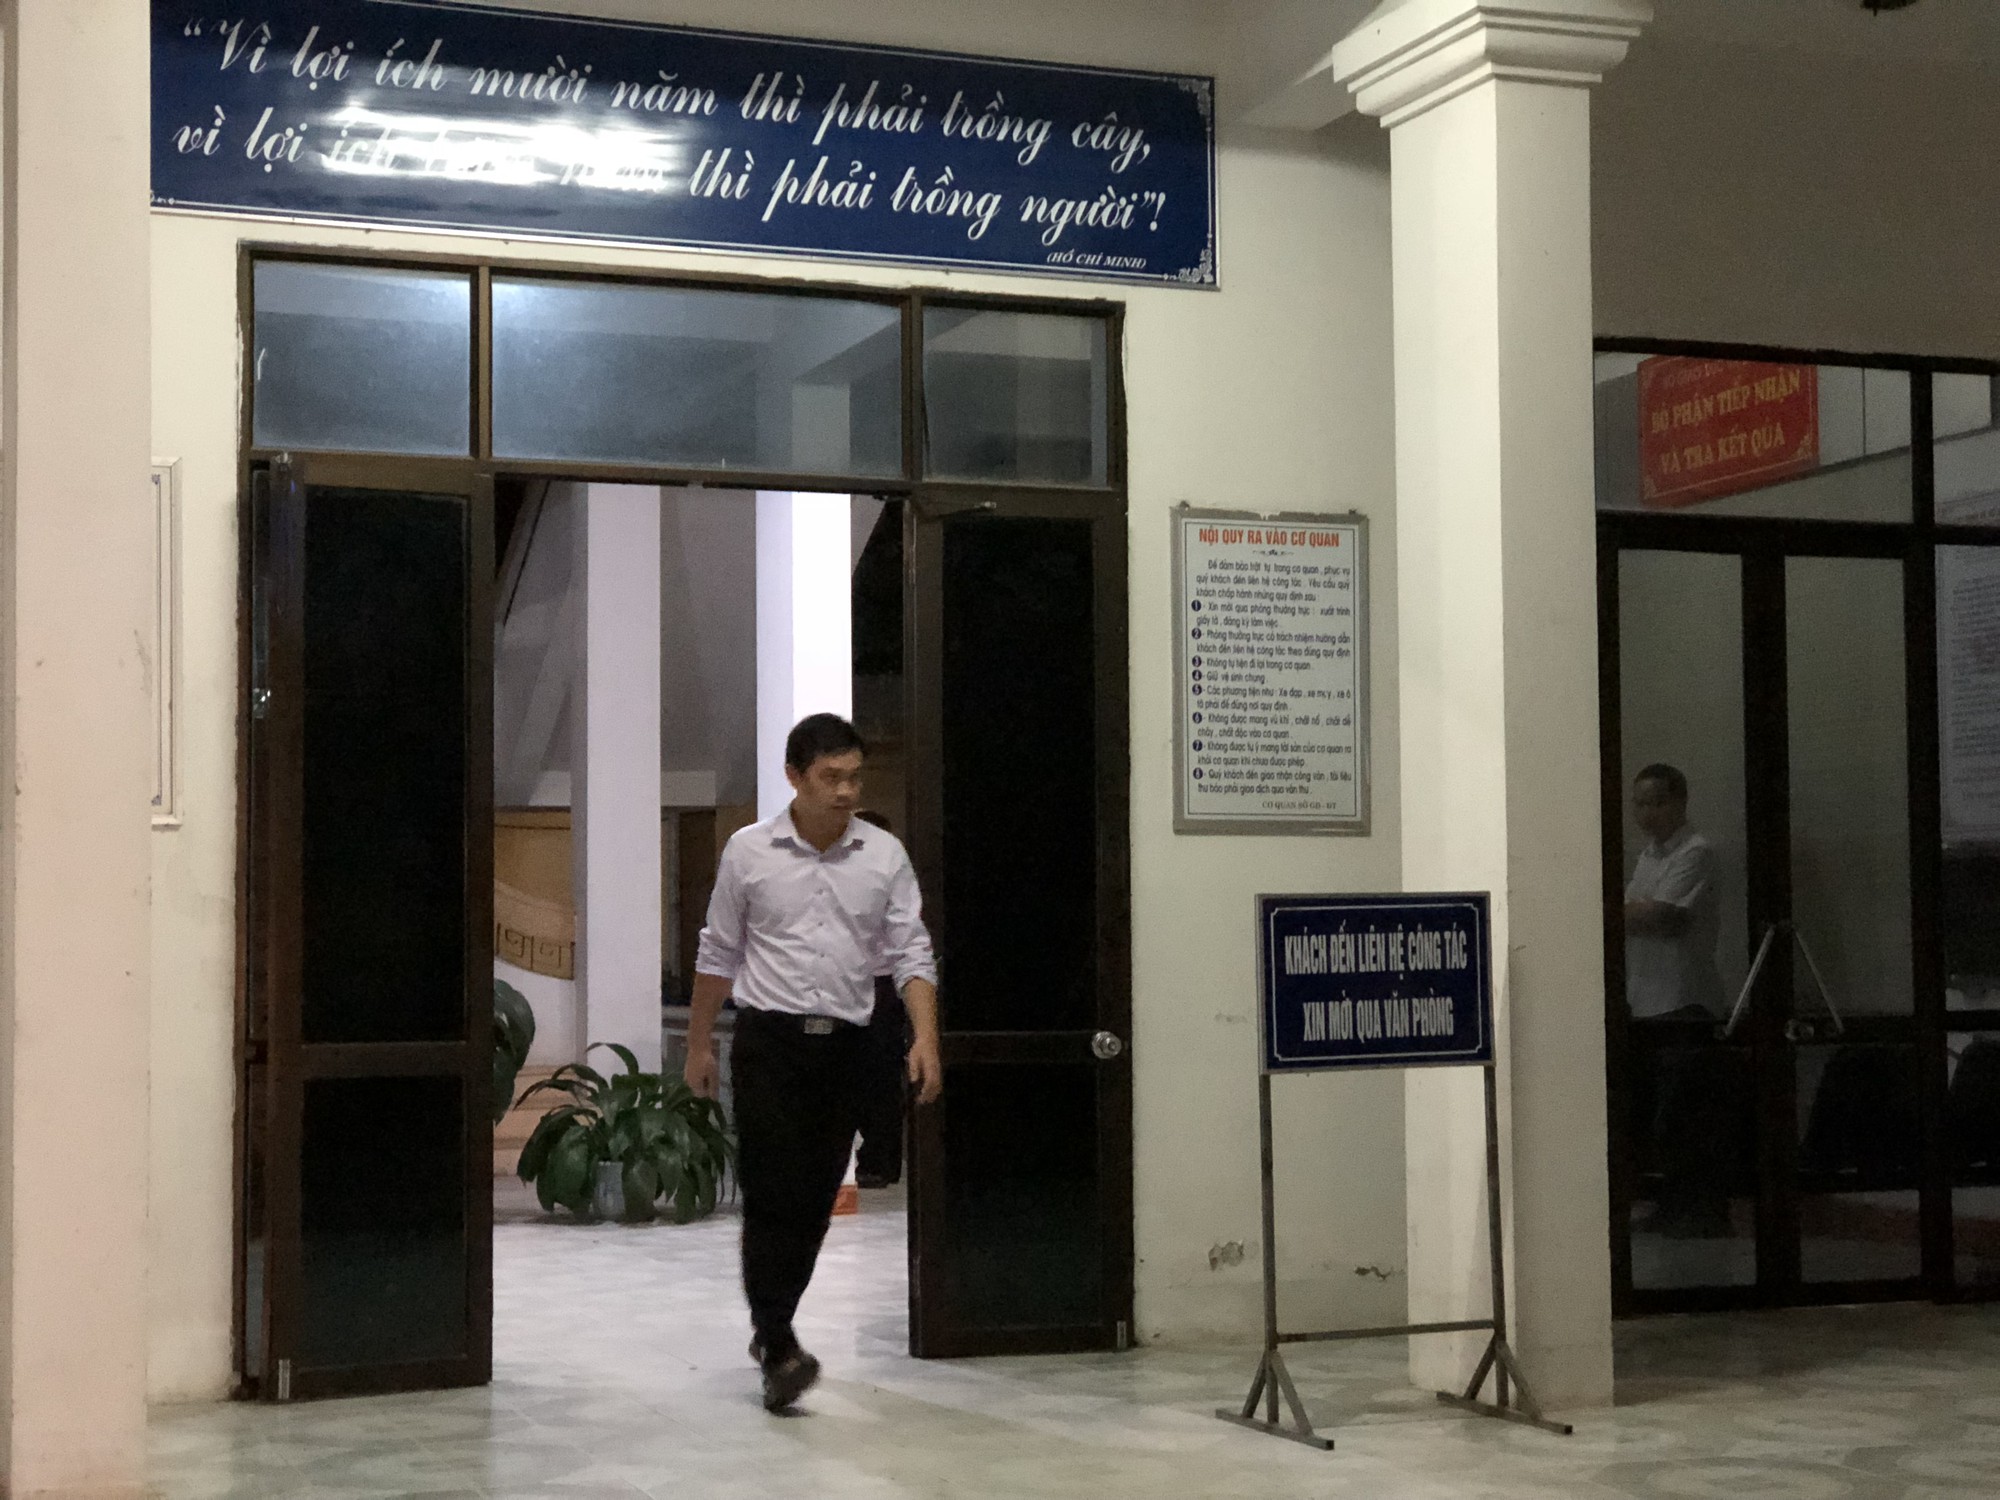 Phó Cục trưởng Cục Quản lý Chất lượng: “Có những thông tin đang rà soát về nghi vấn điểm thi ở Lạng Sơn và hiện chưa thể tiết lộ” - Ảnh 4.